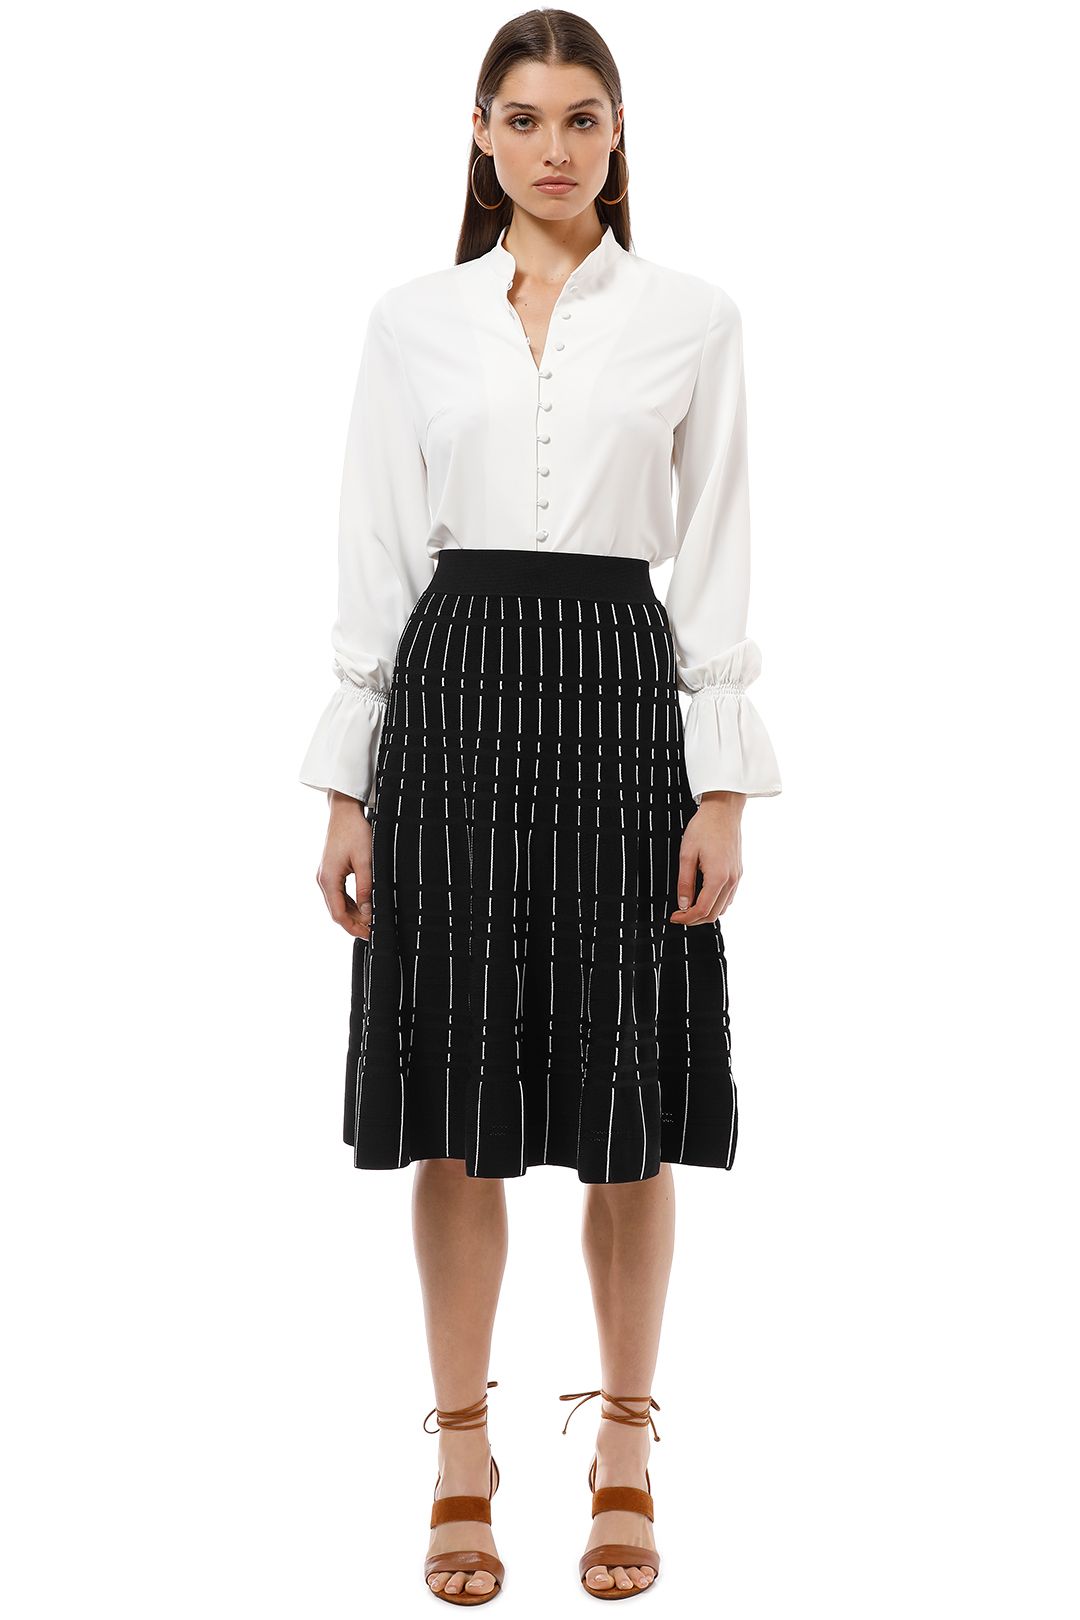 Saba - Milly Milano Skirt - Black White - Front